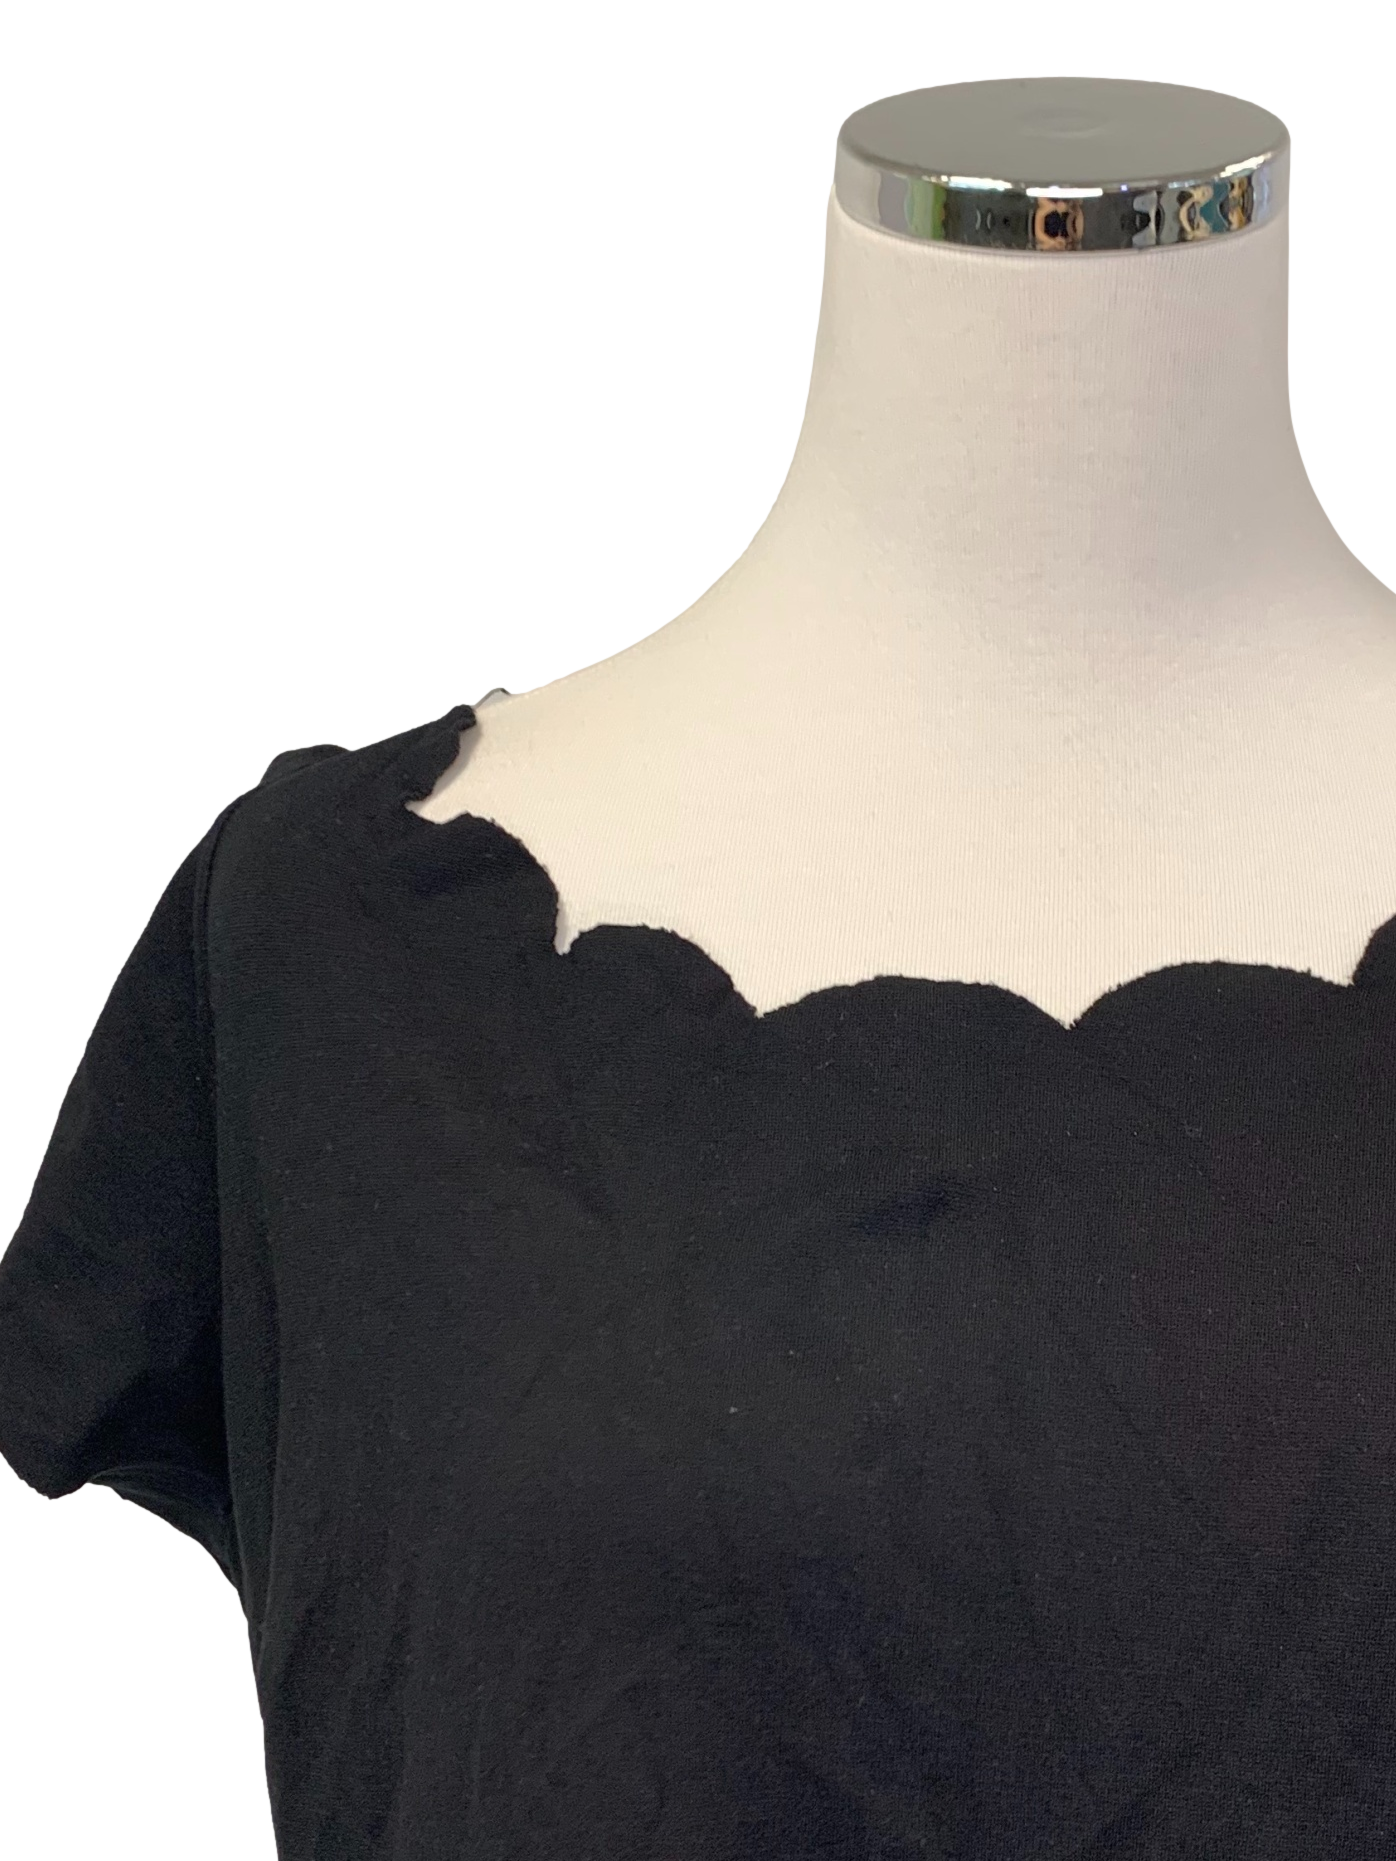 Short Sleeve Slate Black Dress